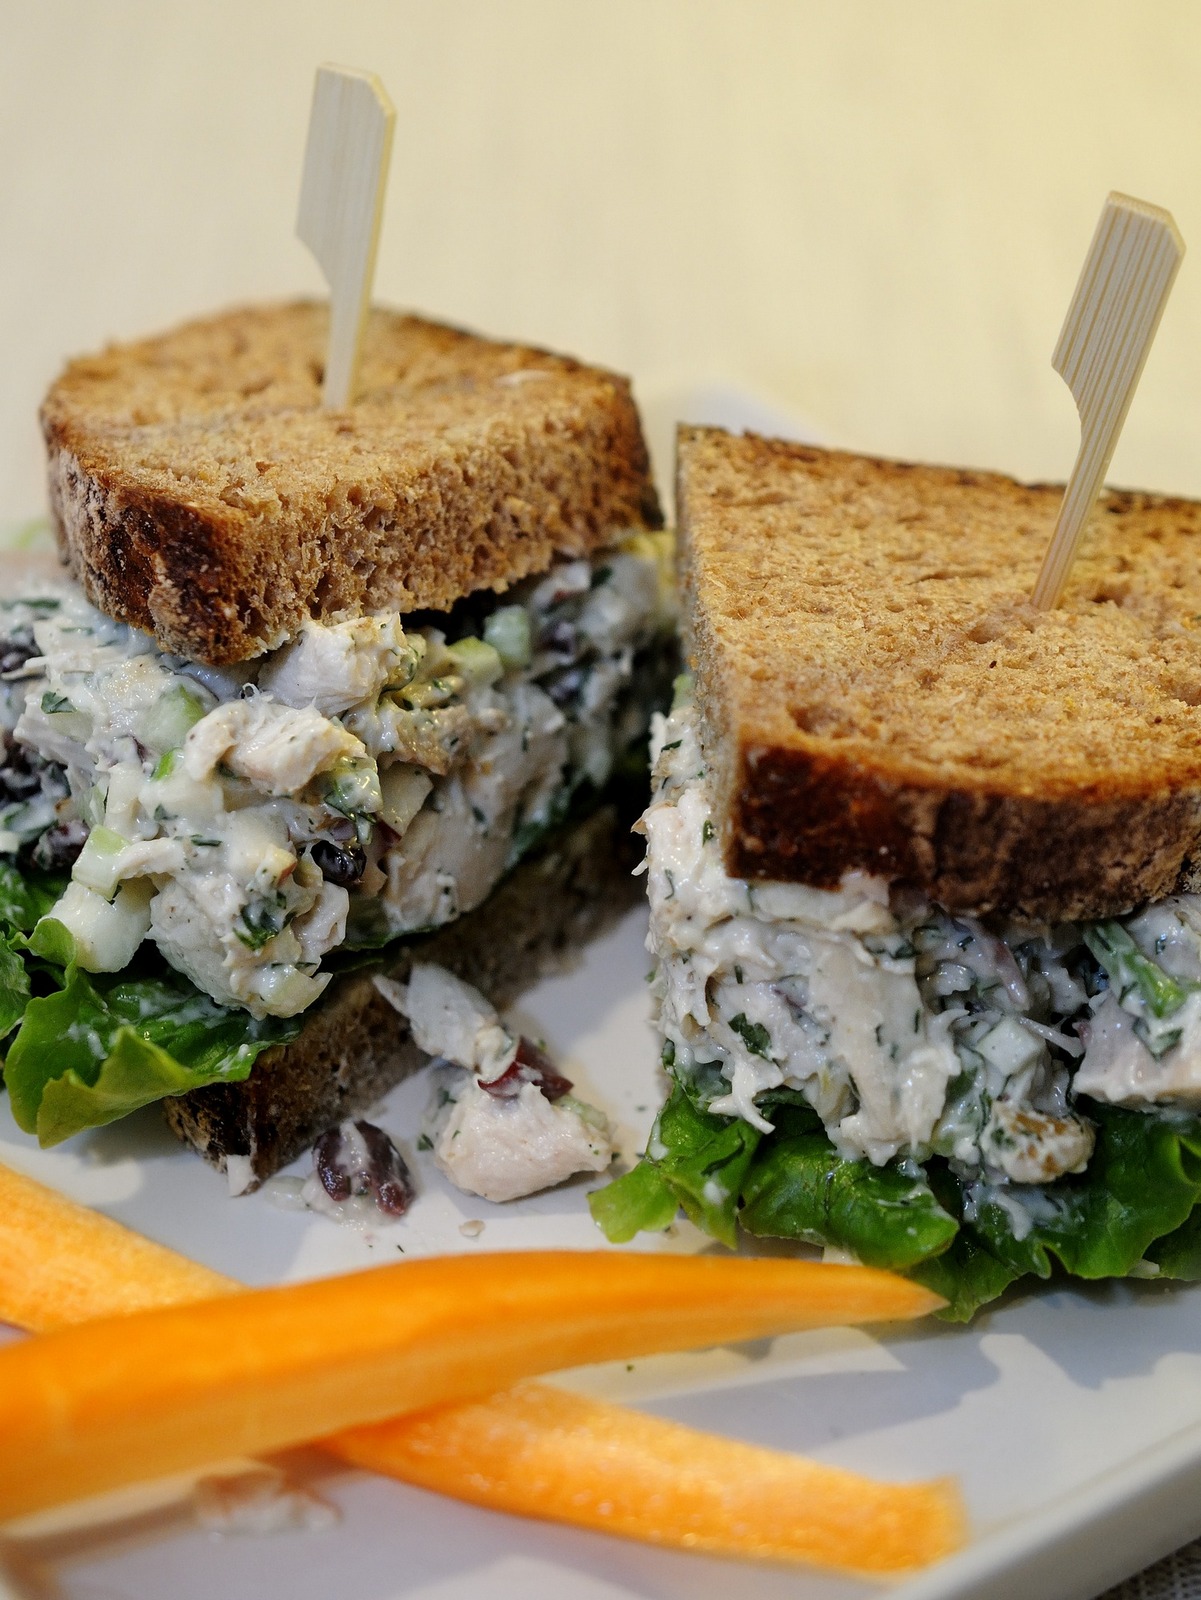 Turkey or Chicken Salad Sandwich Filling on Rye Bread, Carrot Sticks